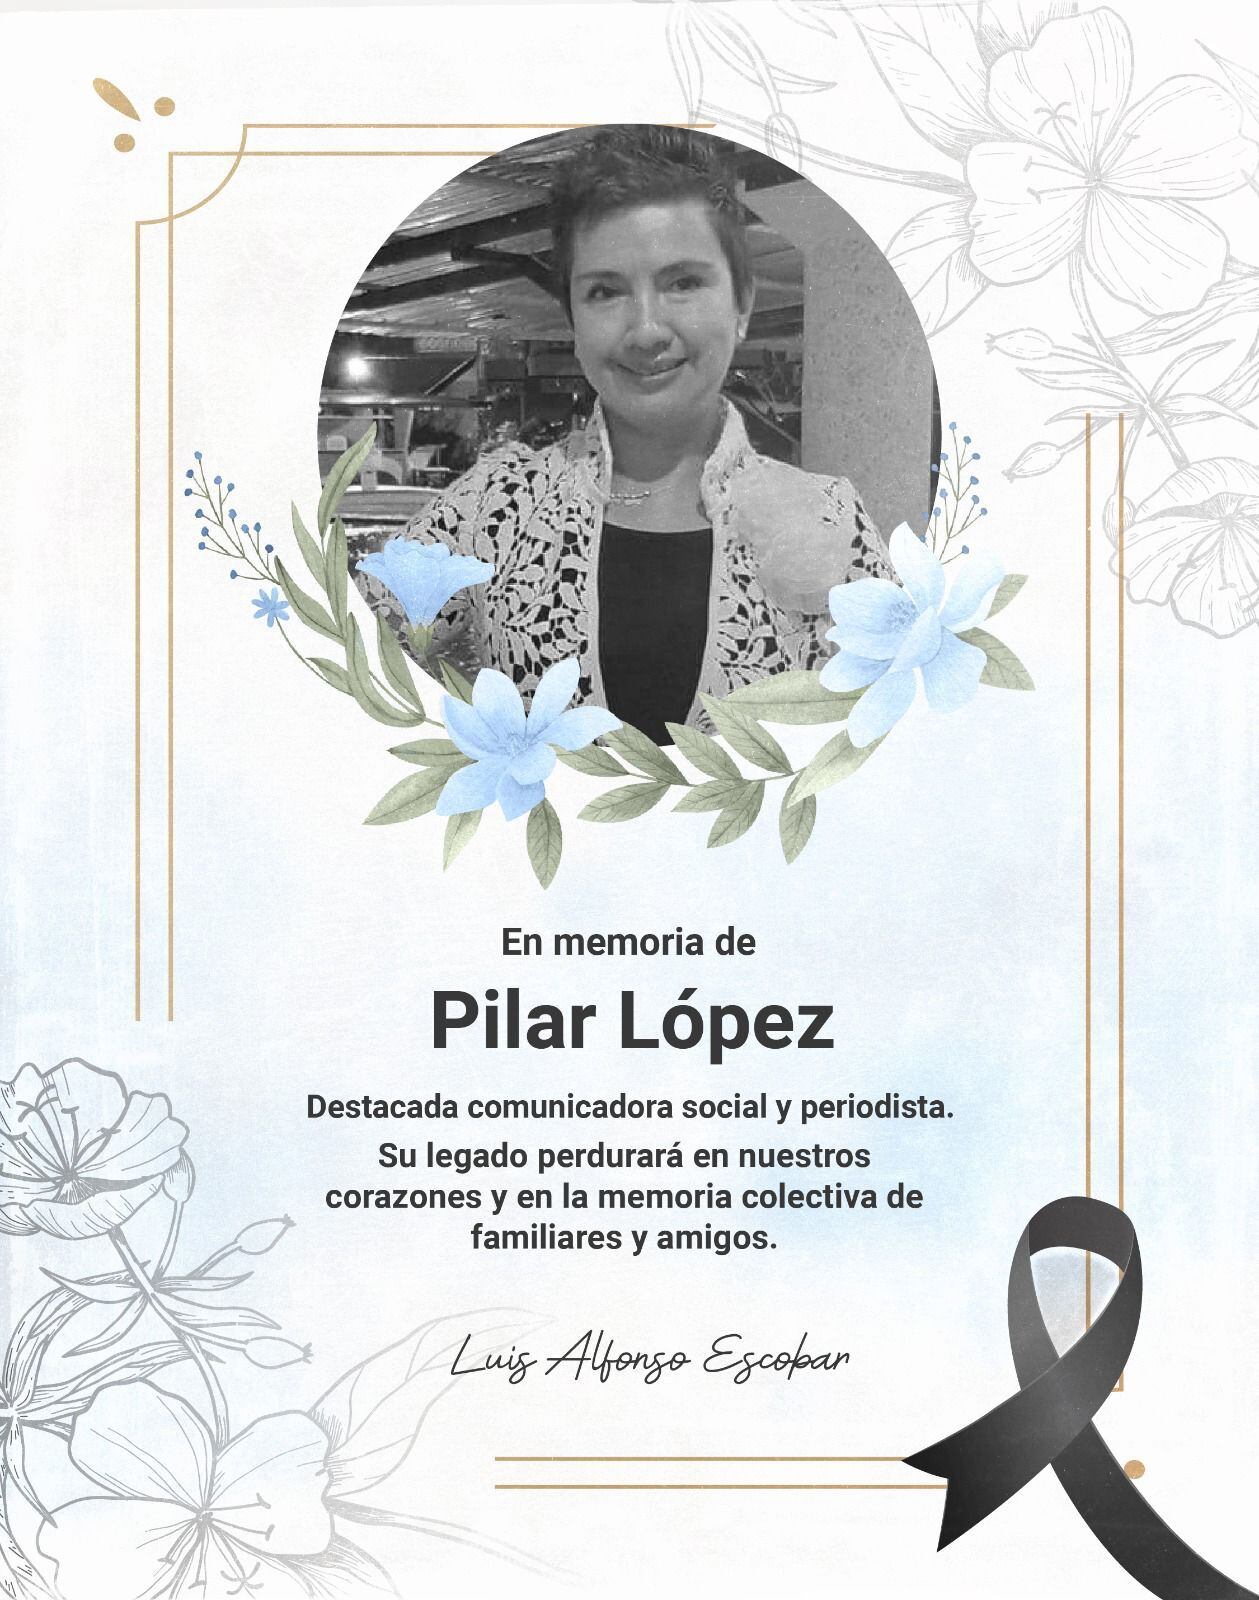 Luis Alfonso Escobar, gobernador del departamento de Nariño, se pronuncia tras la muerte de Pilar López